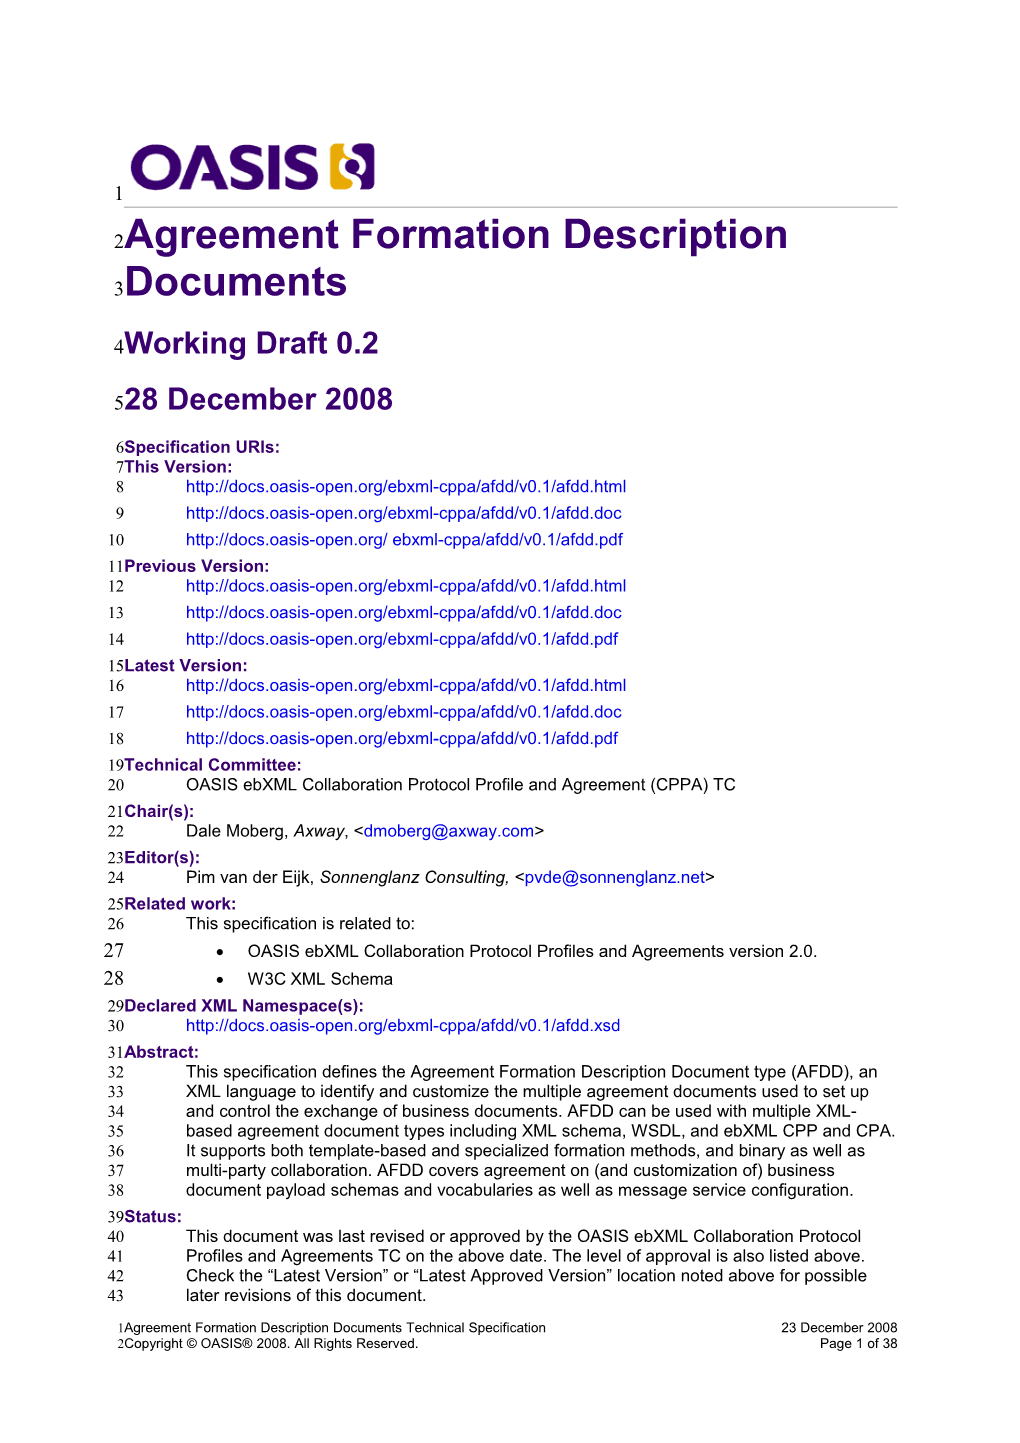 Agreement Formation Description Documents